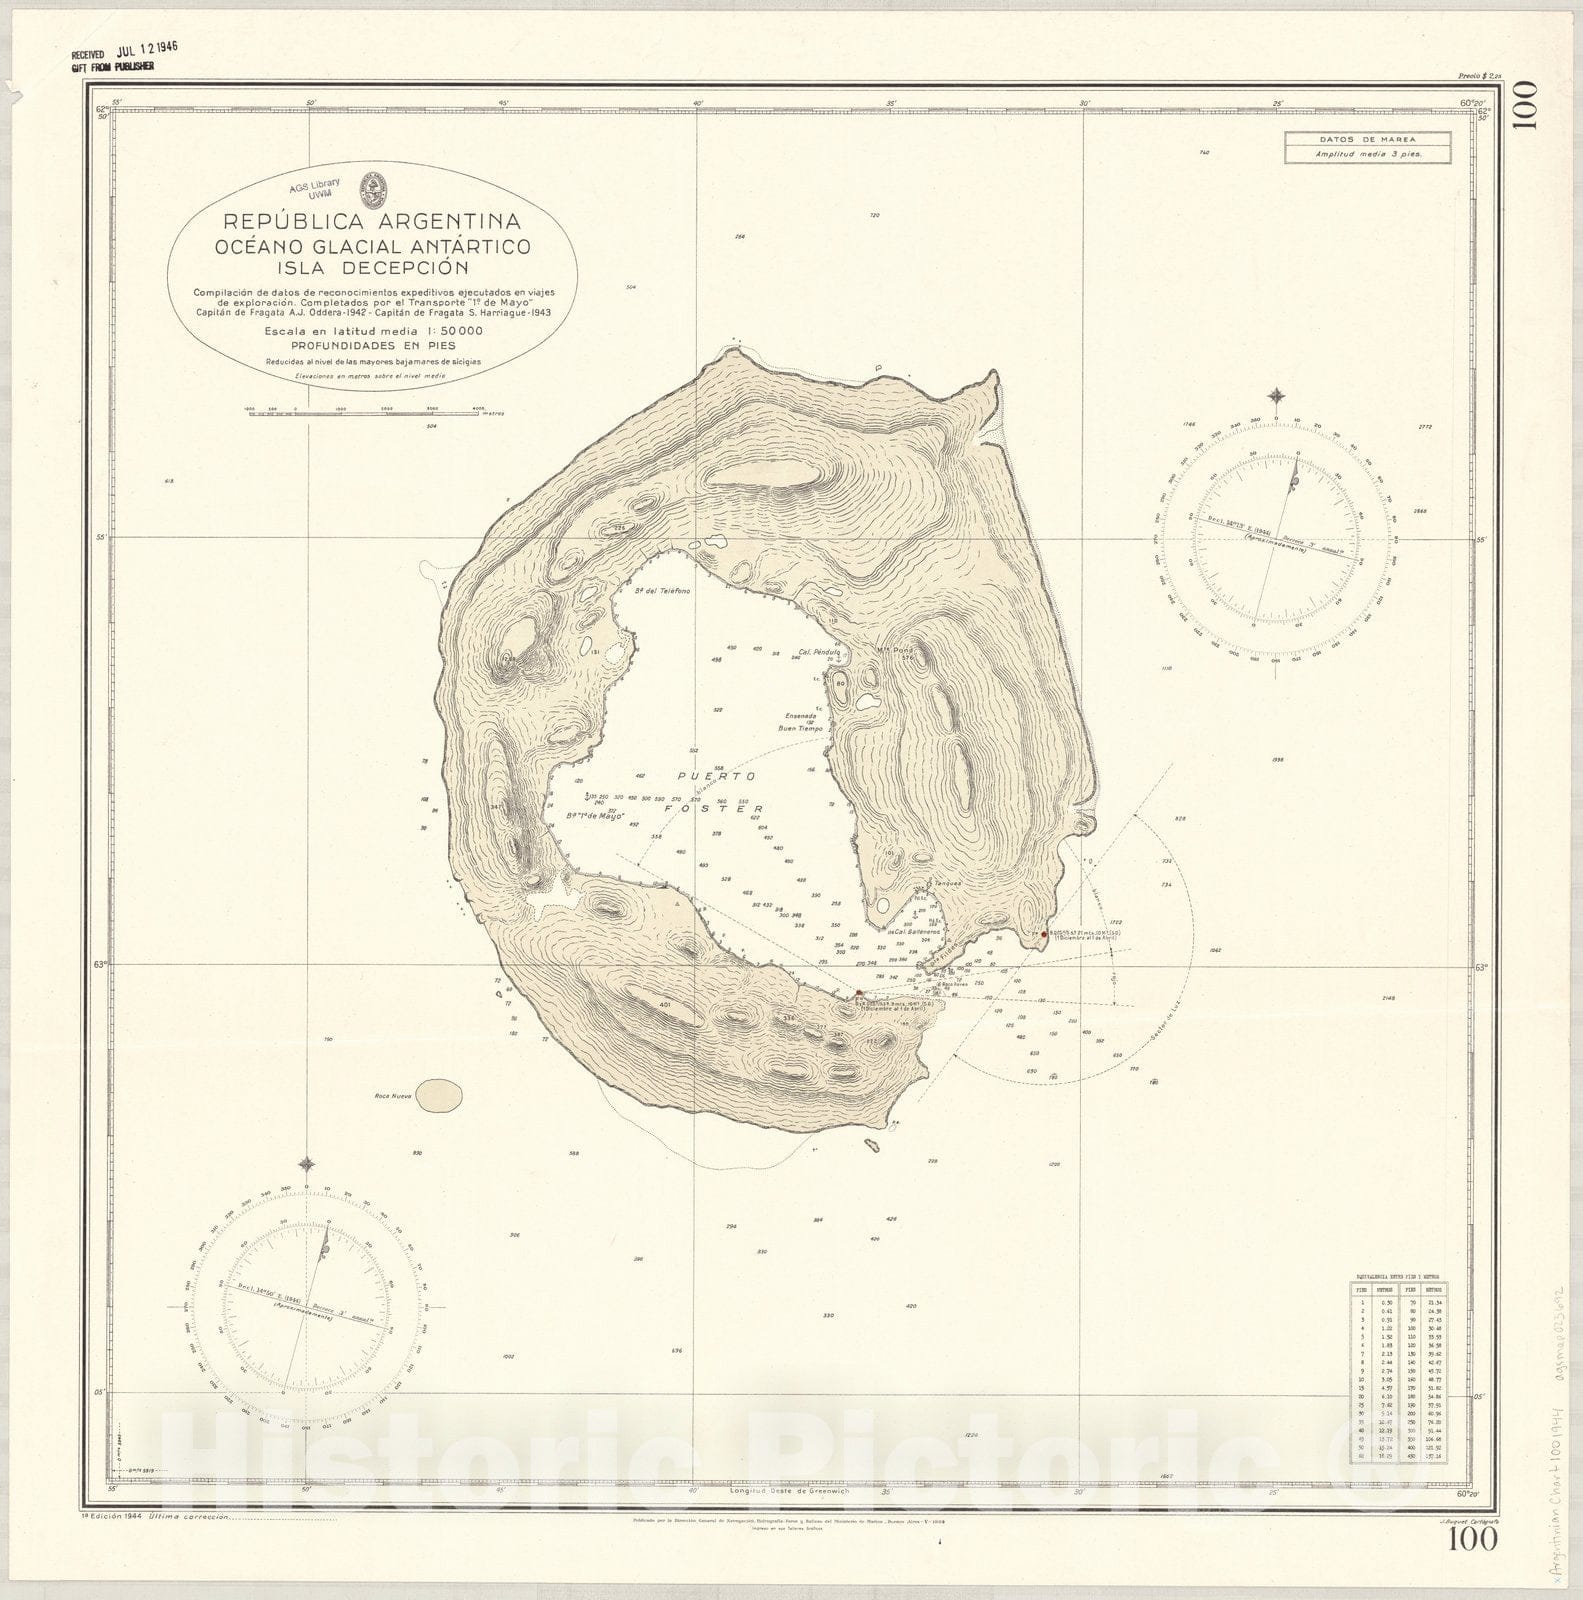 Map : Deception Island, Antarctica 1944, Republica Argentina, Oceano Glacial Antartico, Isla Decepcion , Antique Vintage Reproduction